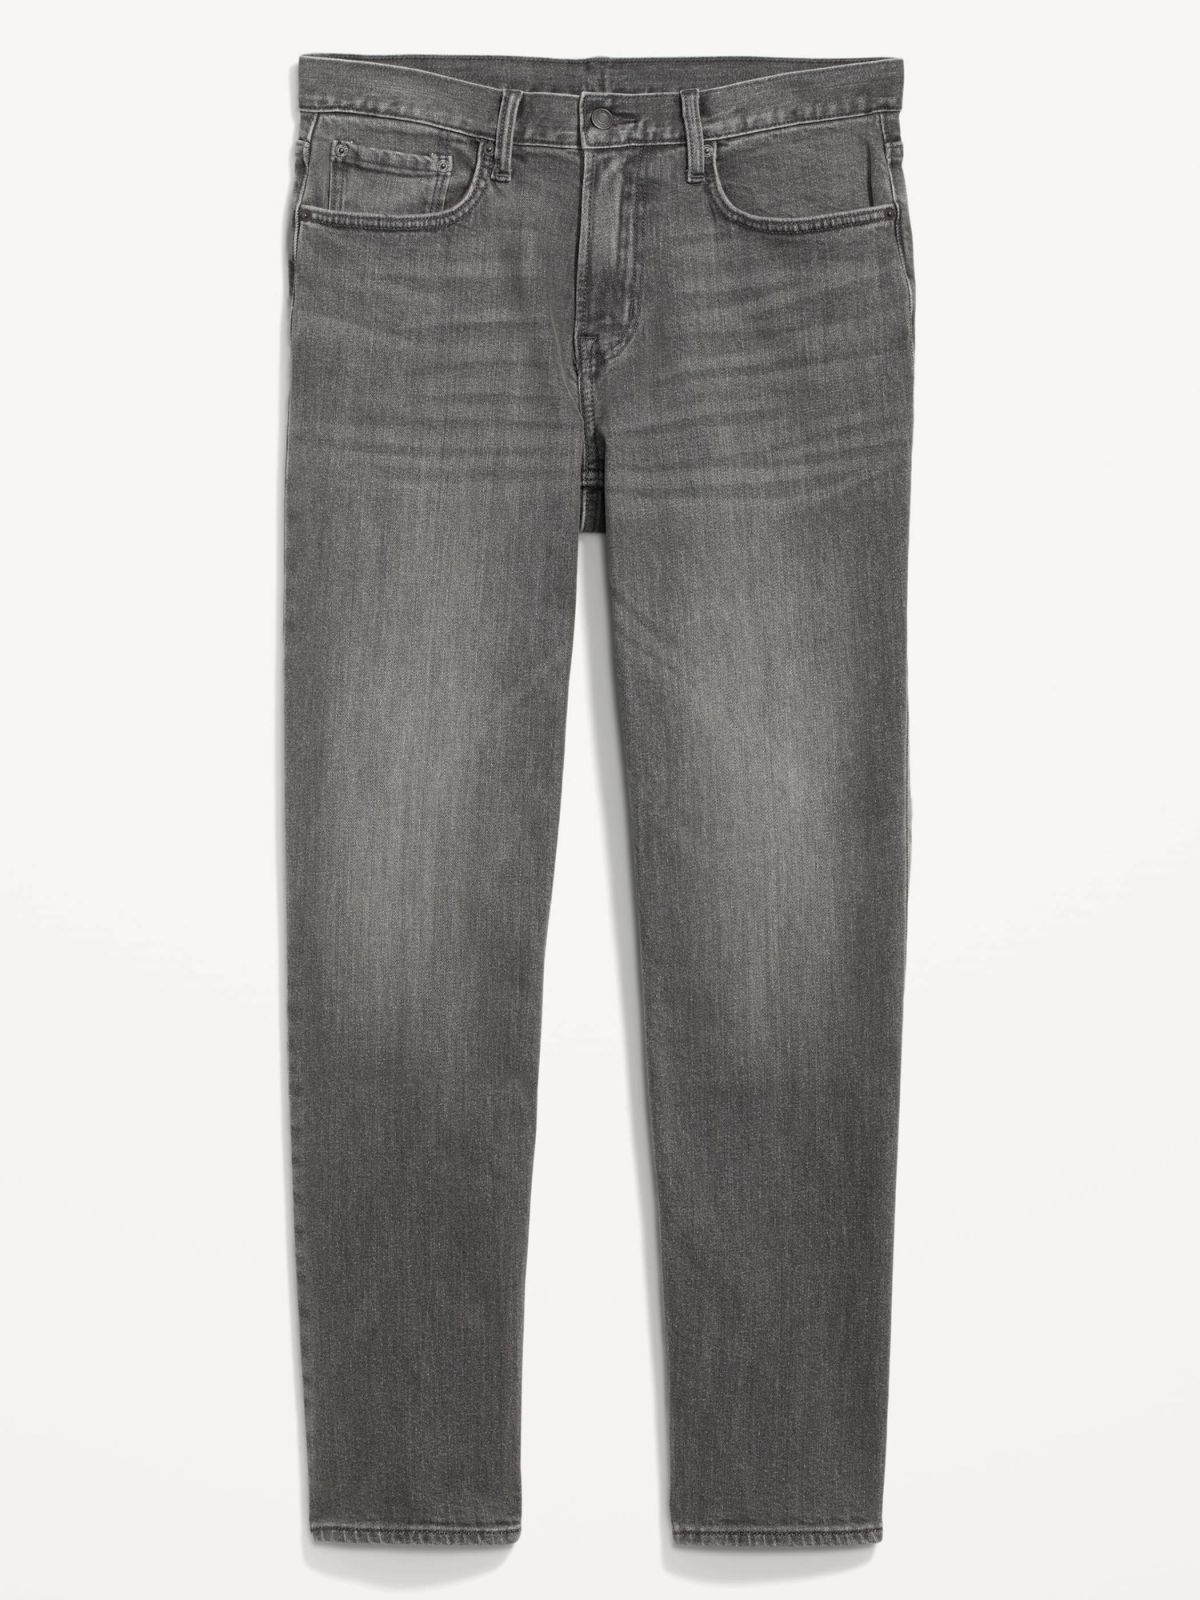  מכנסי ג'ינס ארוכים בגזרה משוחררת של OLD NAVY